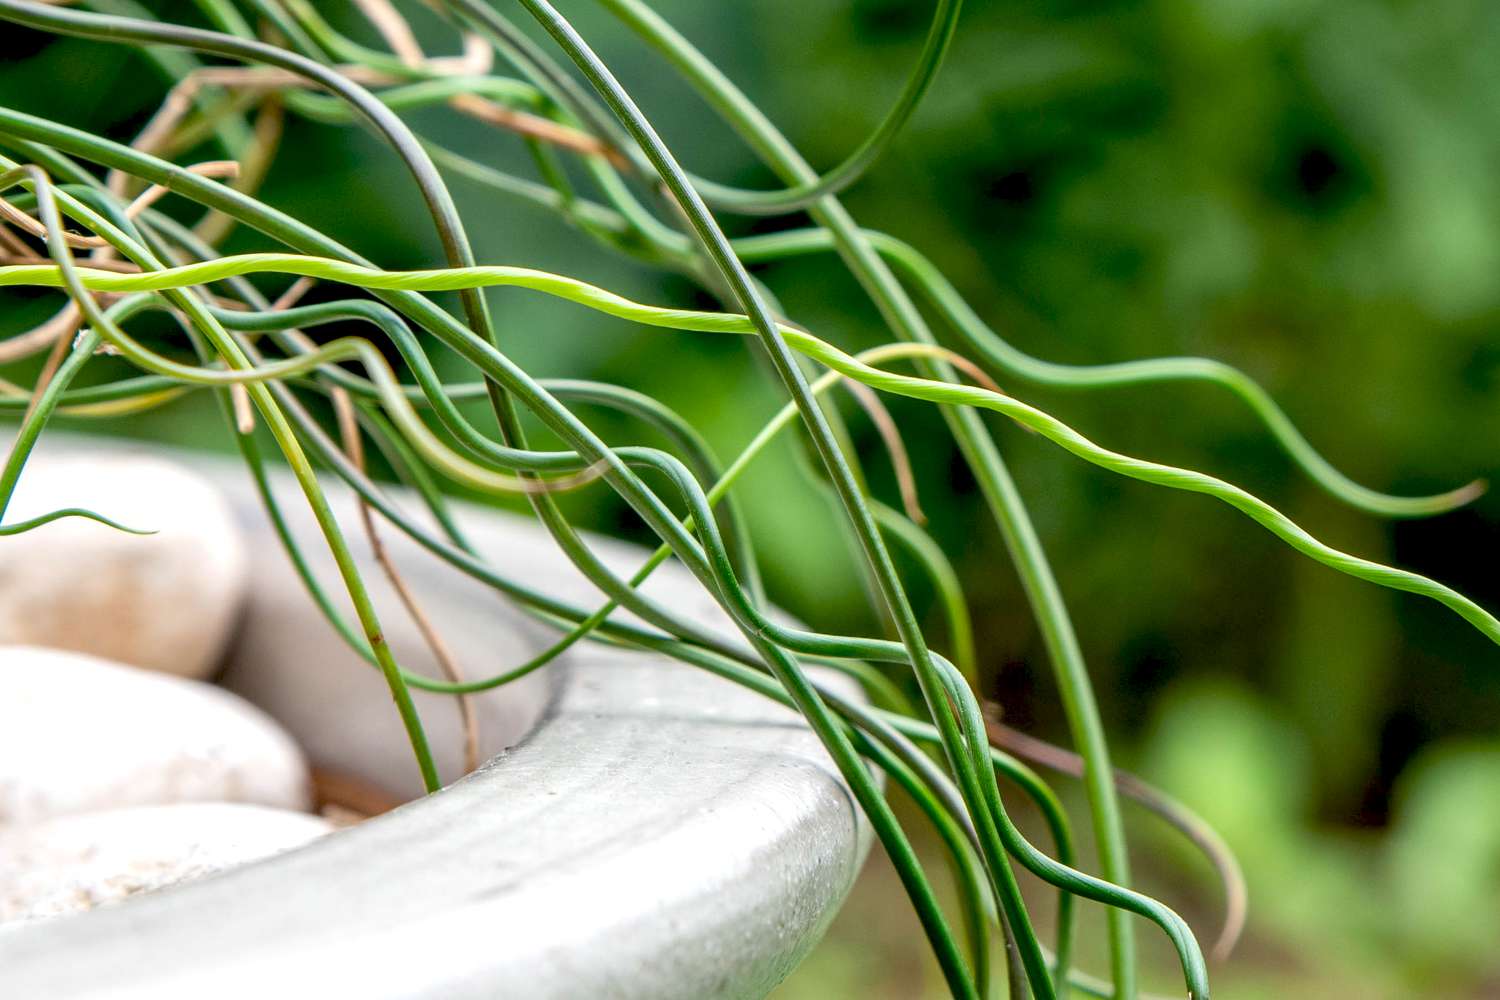 Plantas de junco saca-rolhas com hastes verdes claras retorcidas e close-up da borda do vaso